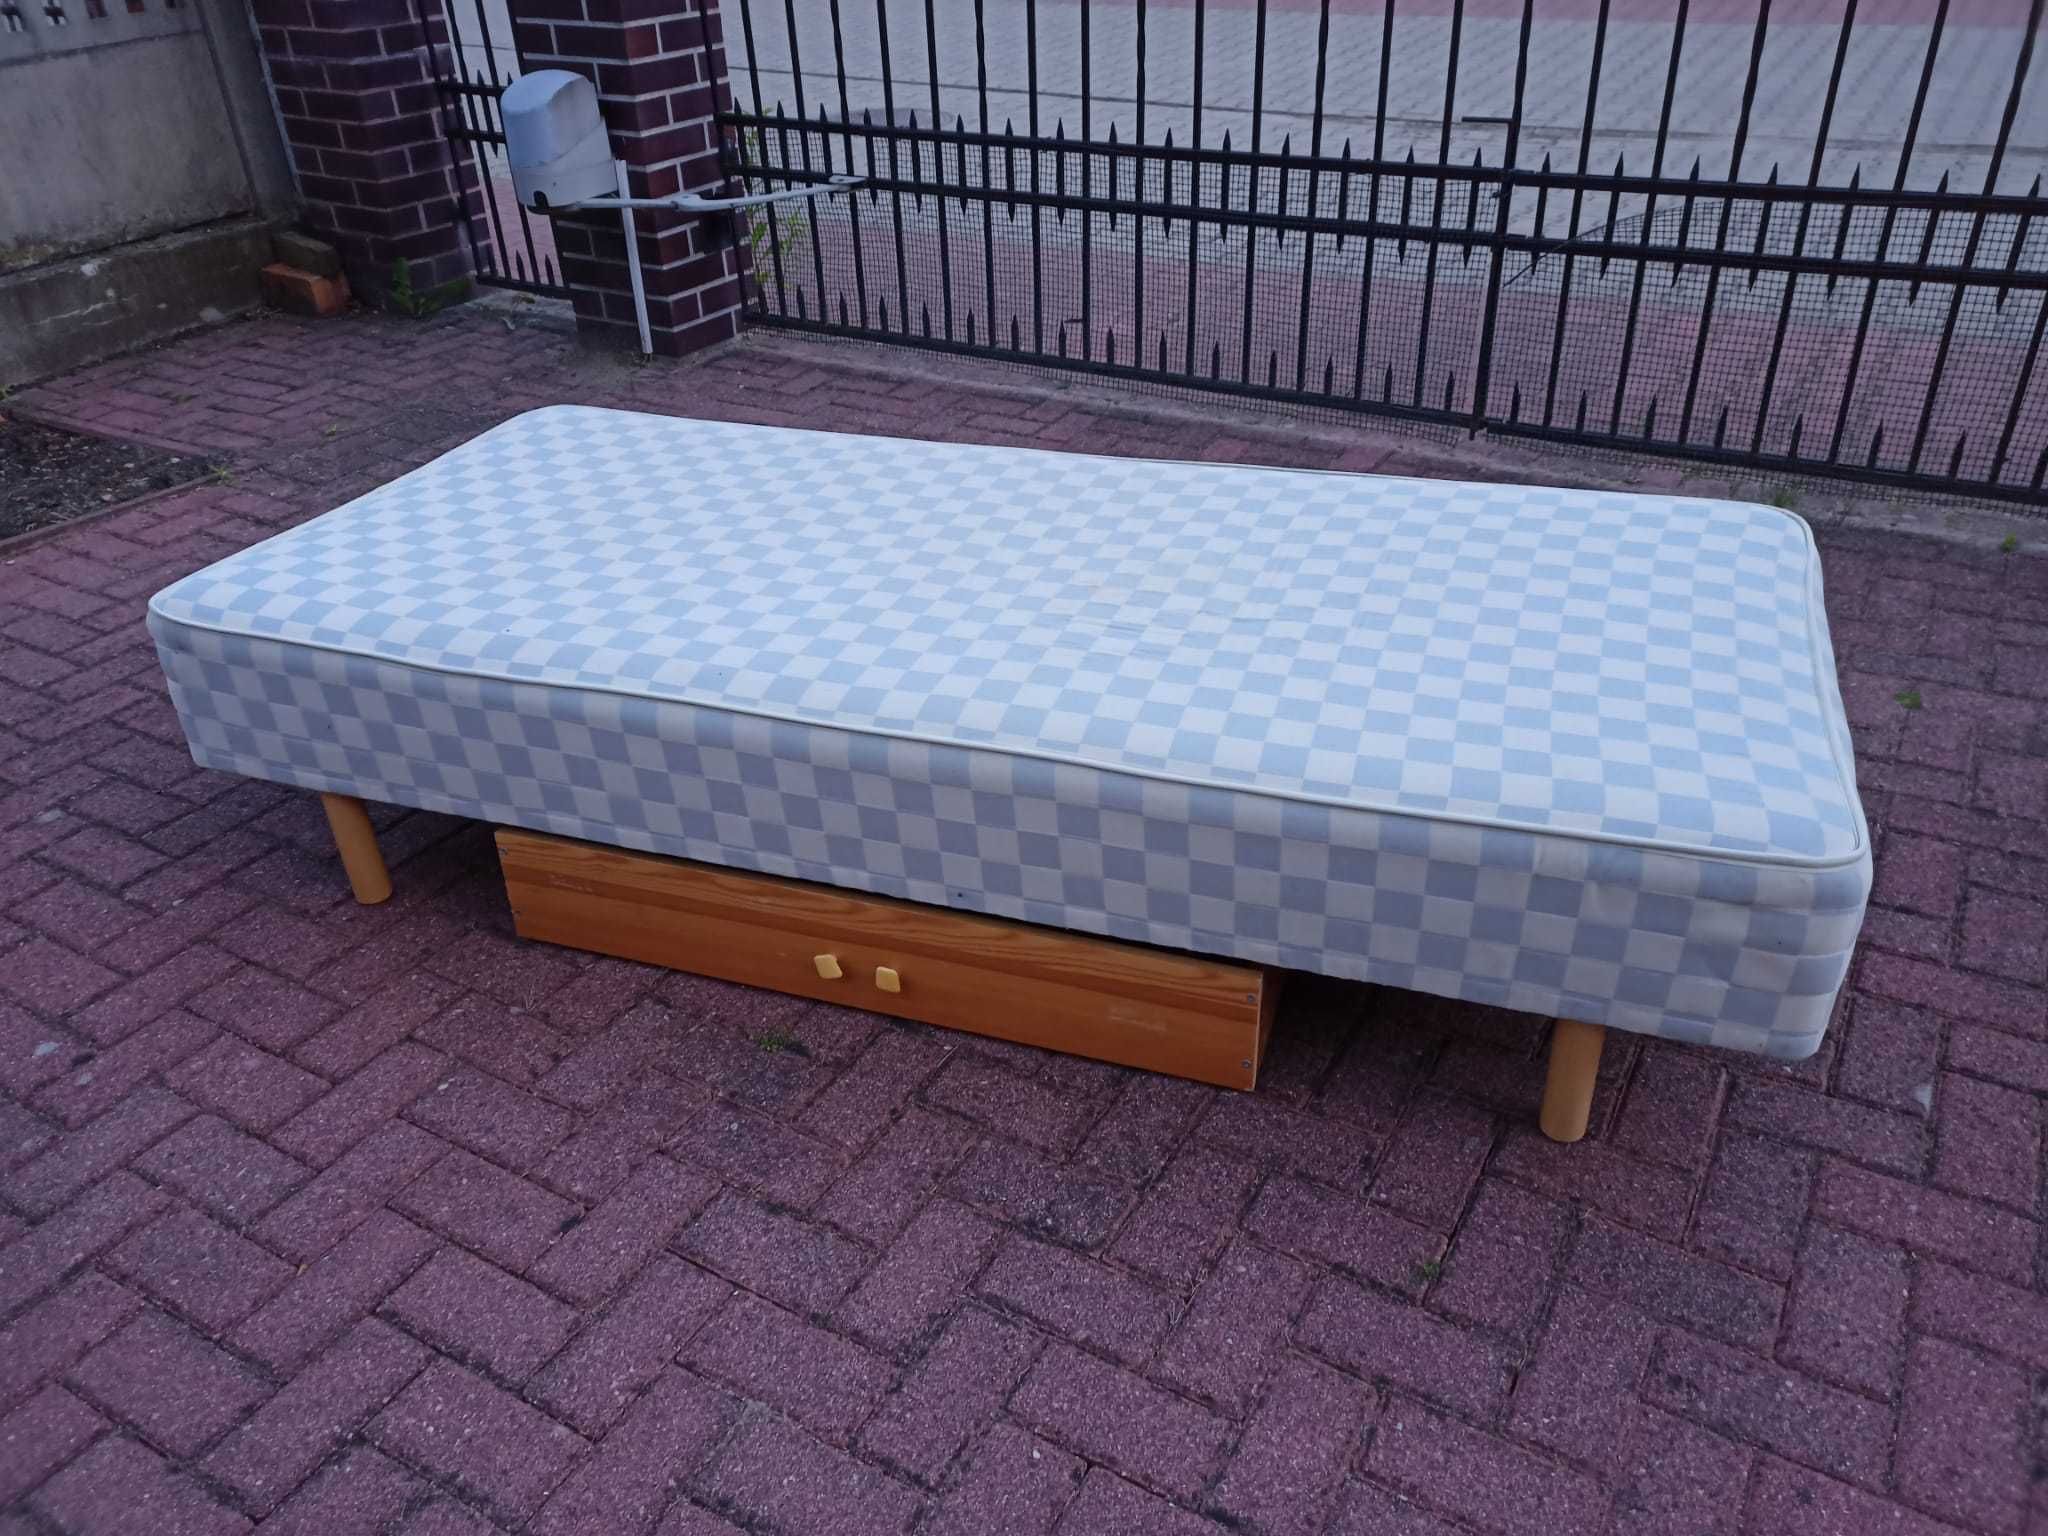 Drewniane łóżko z materacem i szufladą na kółkach 200 x 90